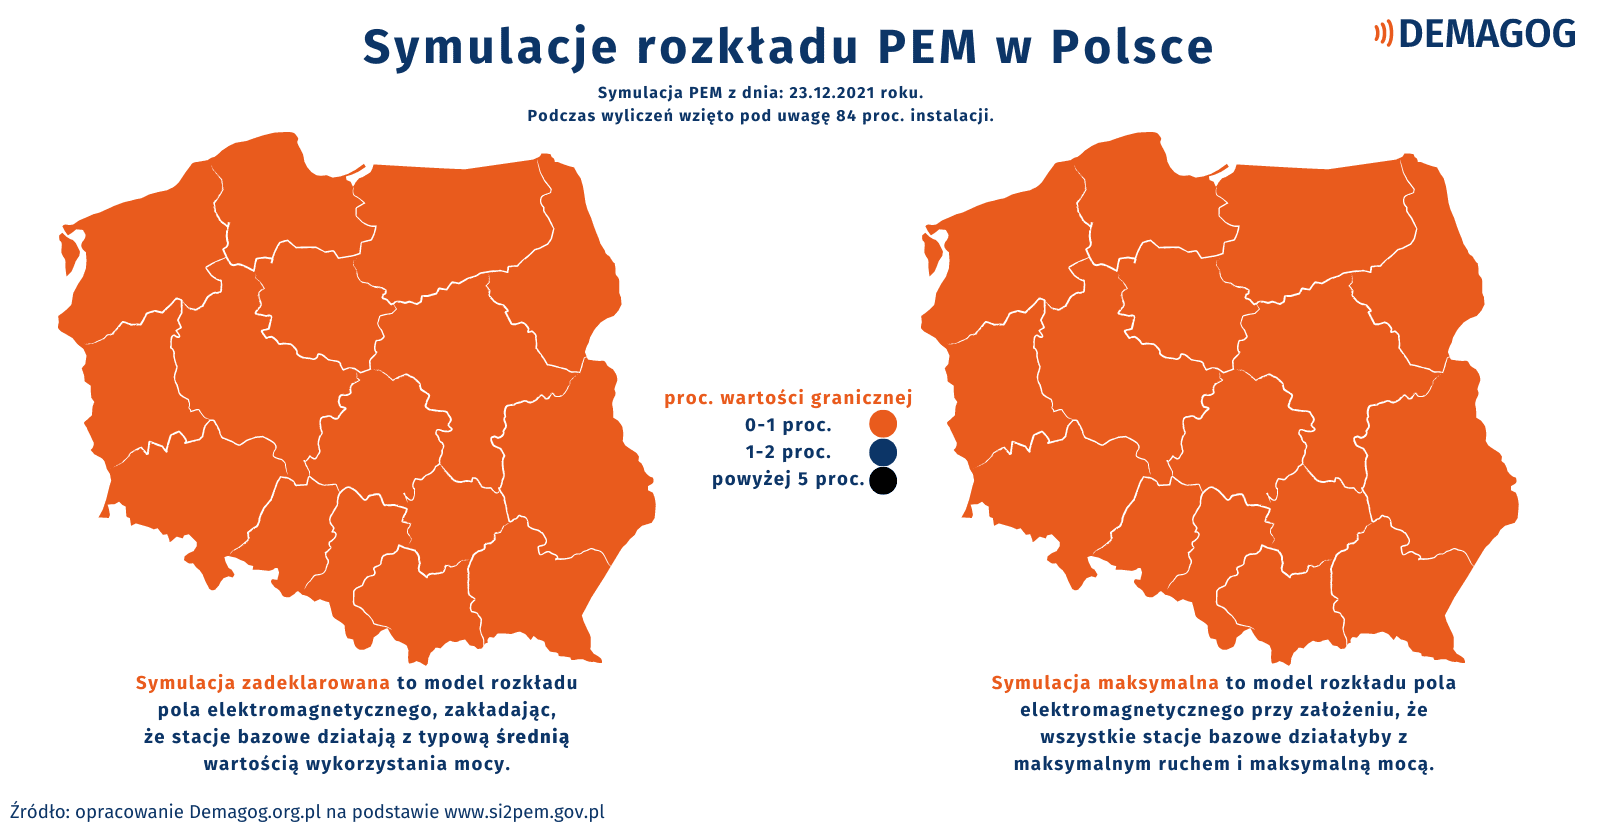 Mapy przedstawiające symulacje rozkładu PEM w Polsce. Całe terytorium kraju wykazuje wartości od 0 do 1 proc. wartości granicznej.